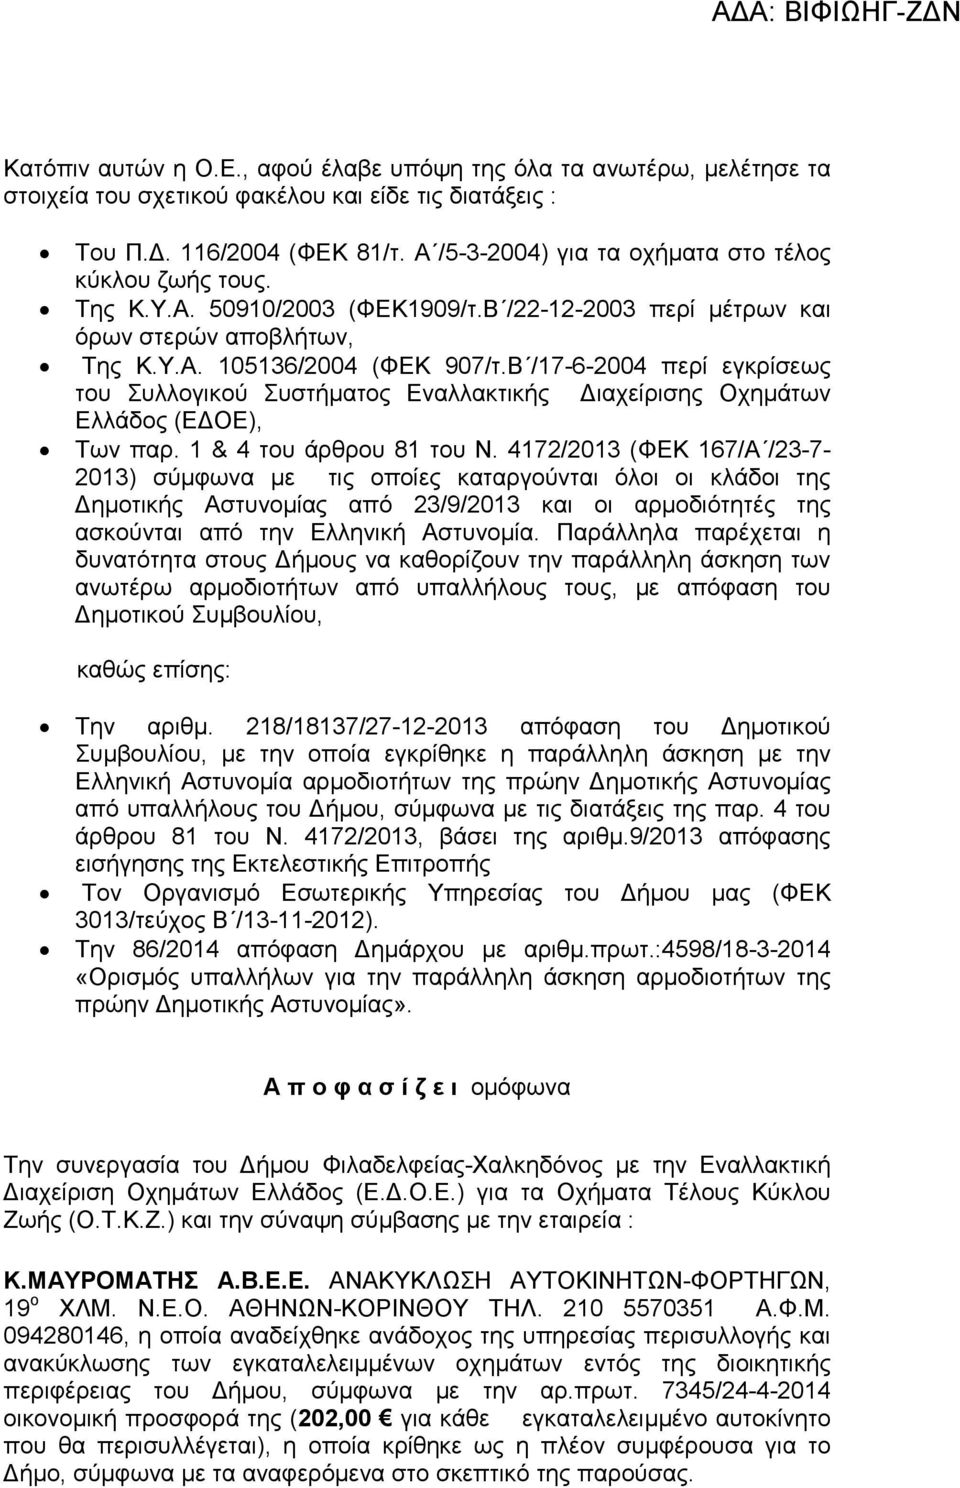 Β /17-6-2004 περί εγκρίσεως του Συλλογικού Συστήµατος Εναλλακτικής ιαχείρισης Οχηµάτων Ελλάδος (Ε ΟΕ), Των παρ. 1 & 4 του άρθρου 81 του Ν.